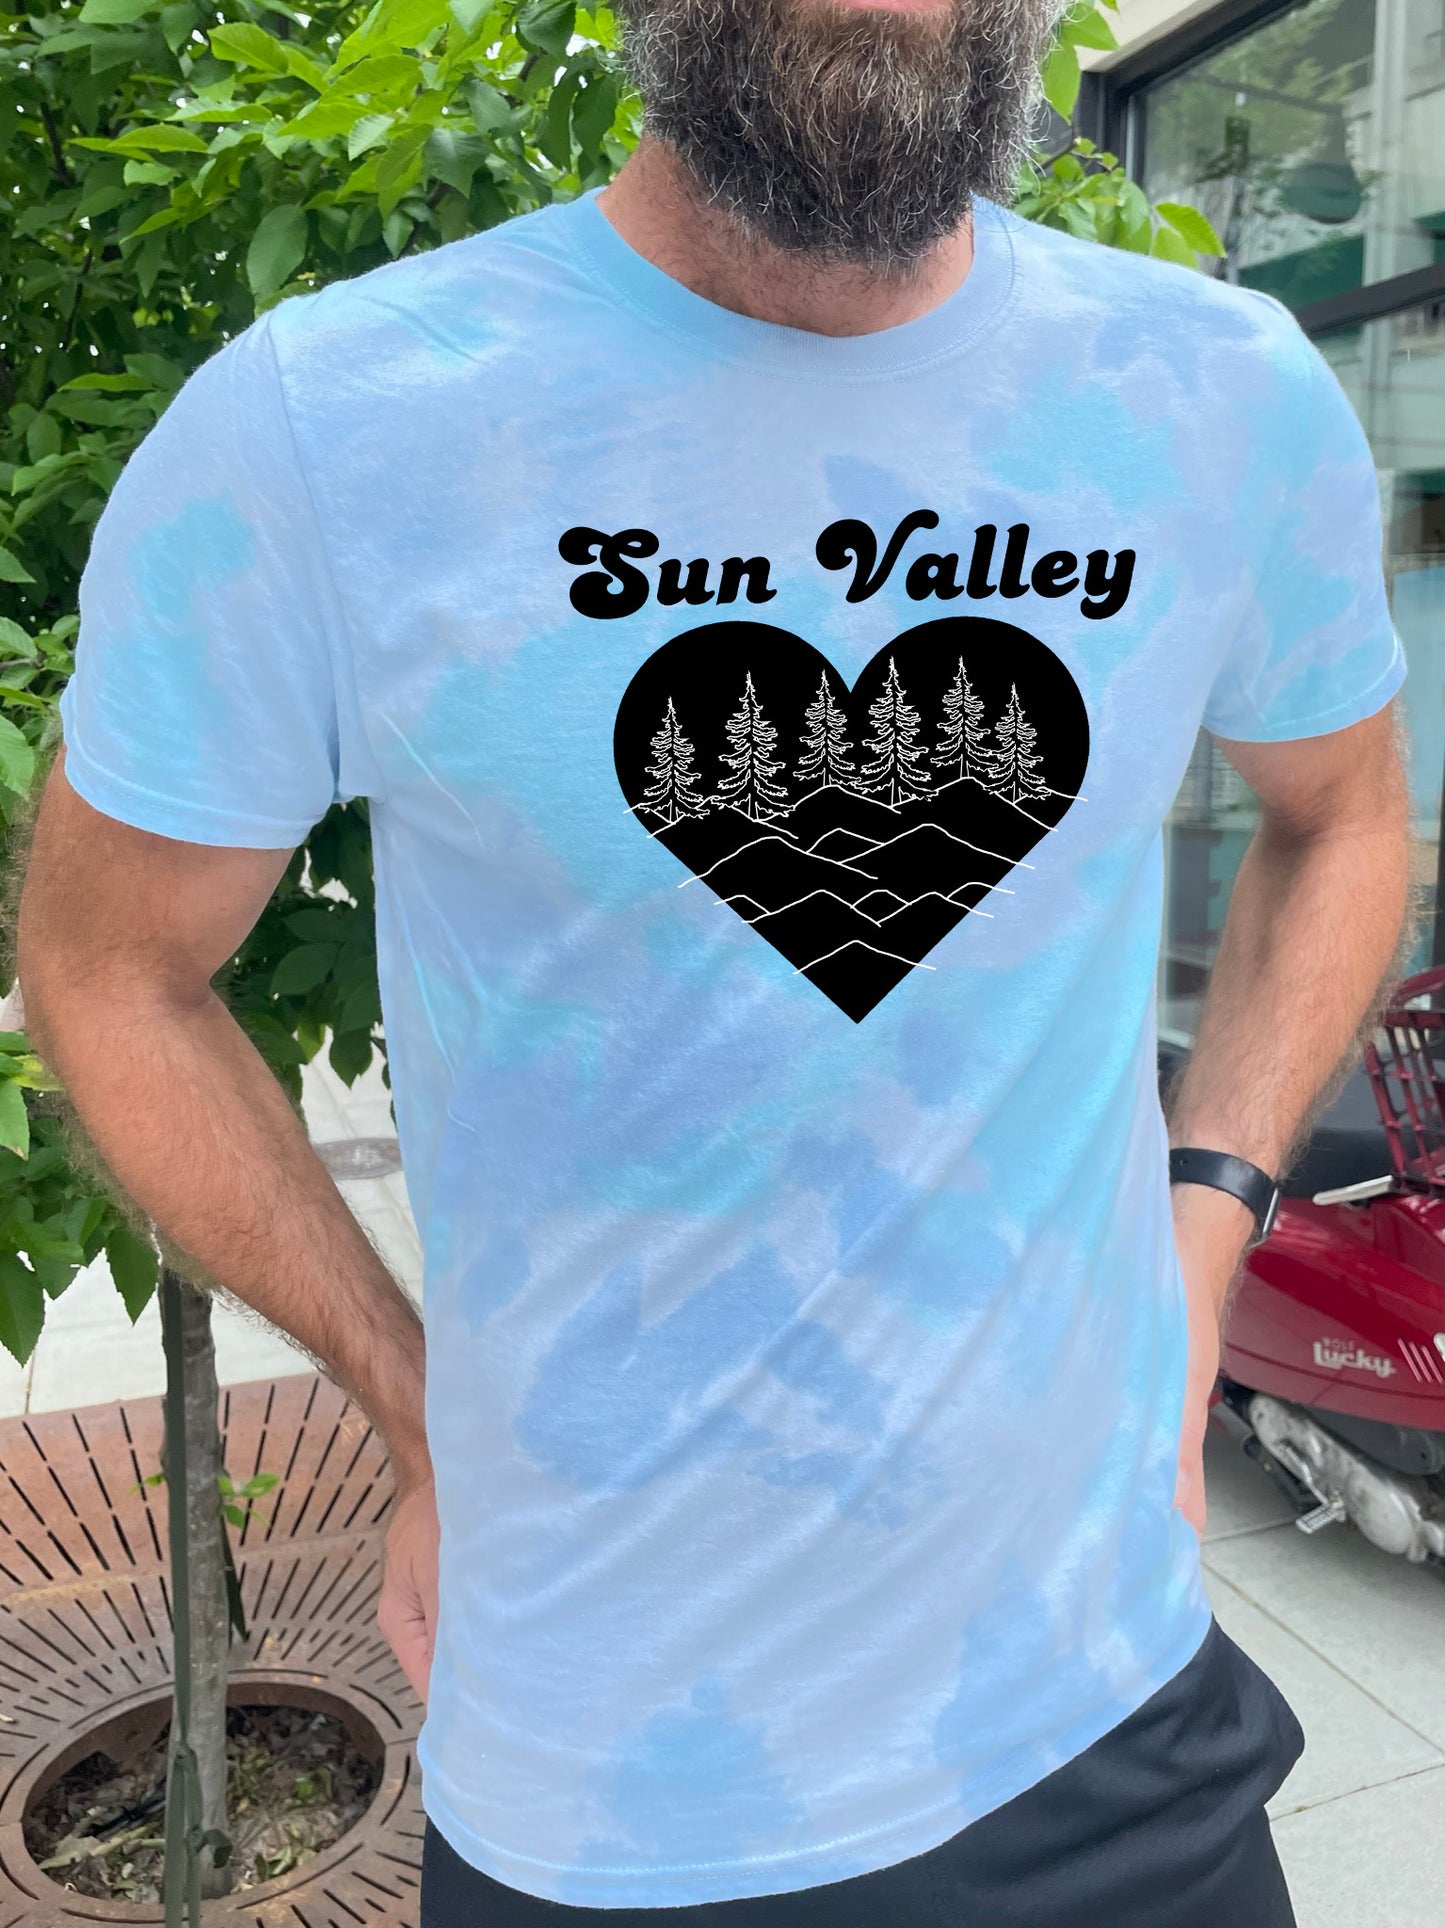 a man with a beard wearing a sun valley t - shirt